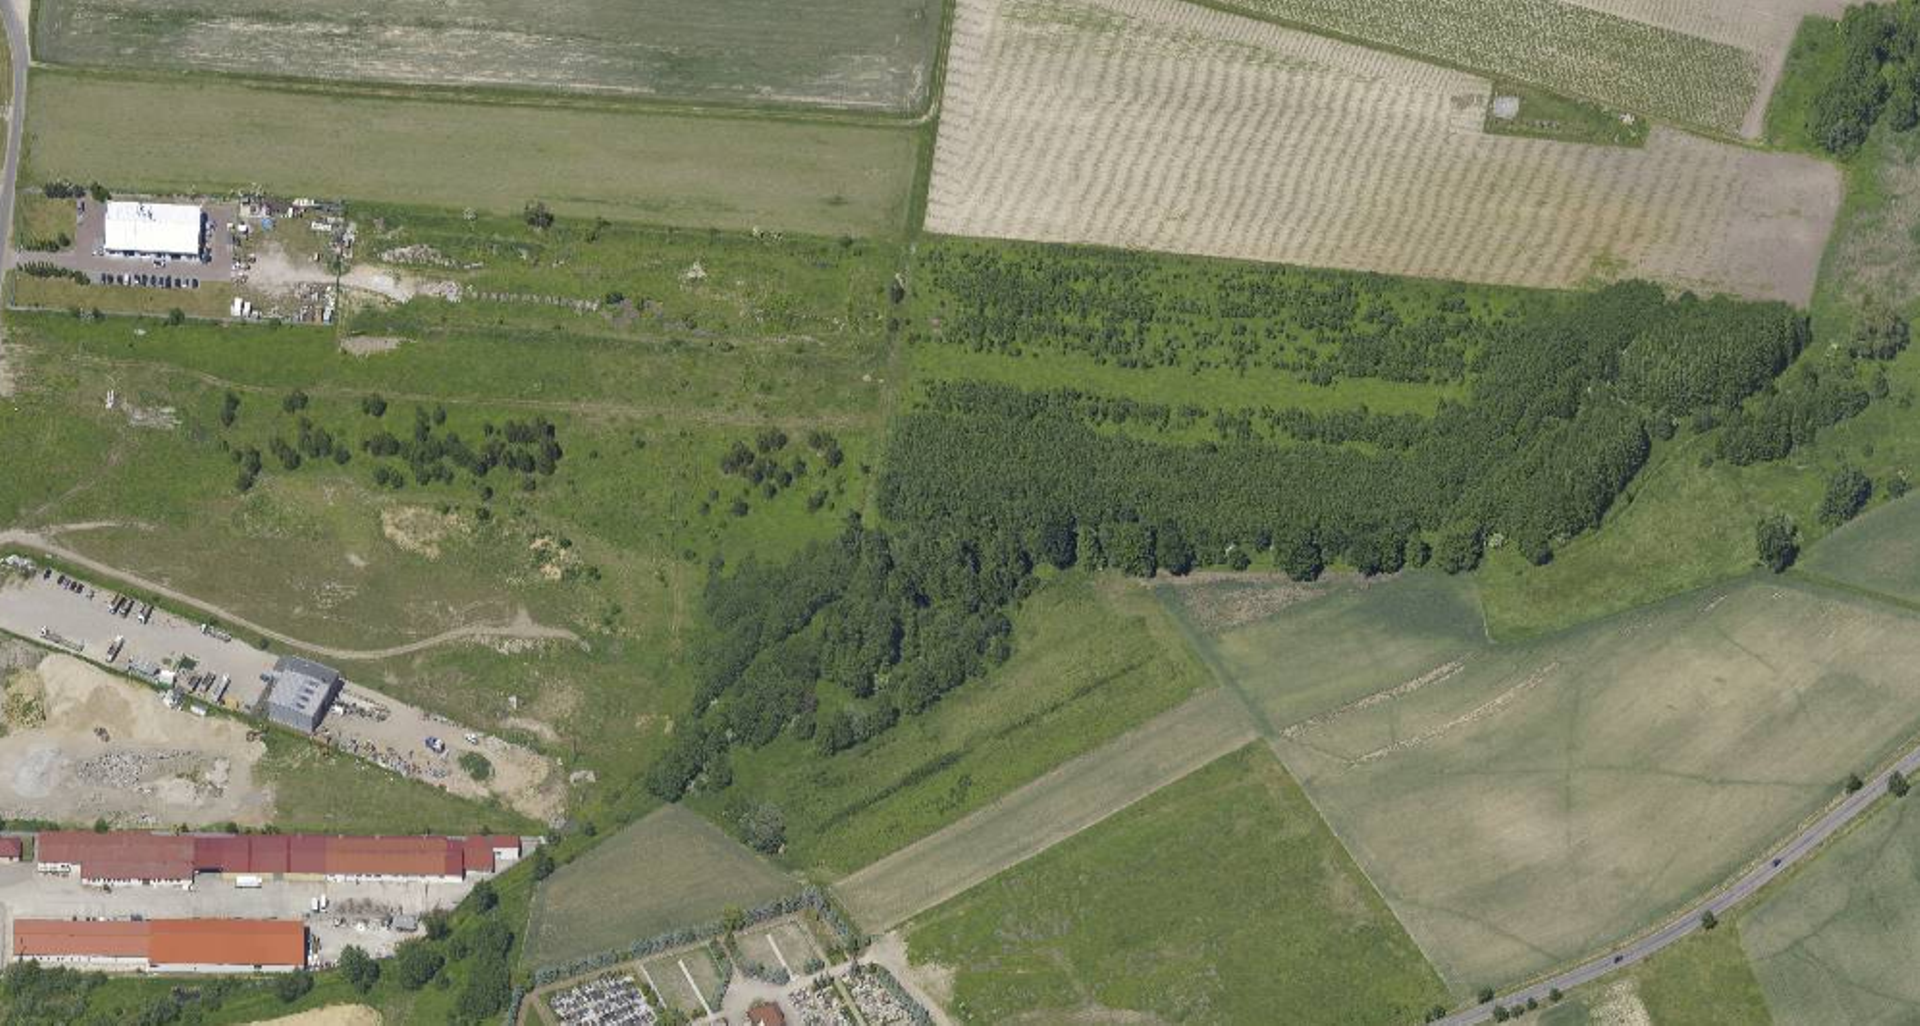 Wrocław: Kilkuhektarowy teren blisko obwodnicy Leśnicy trafi w prywatne ręce